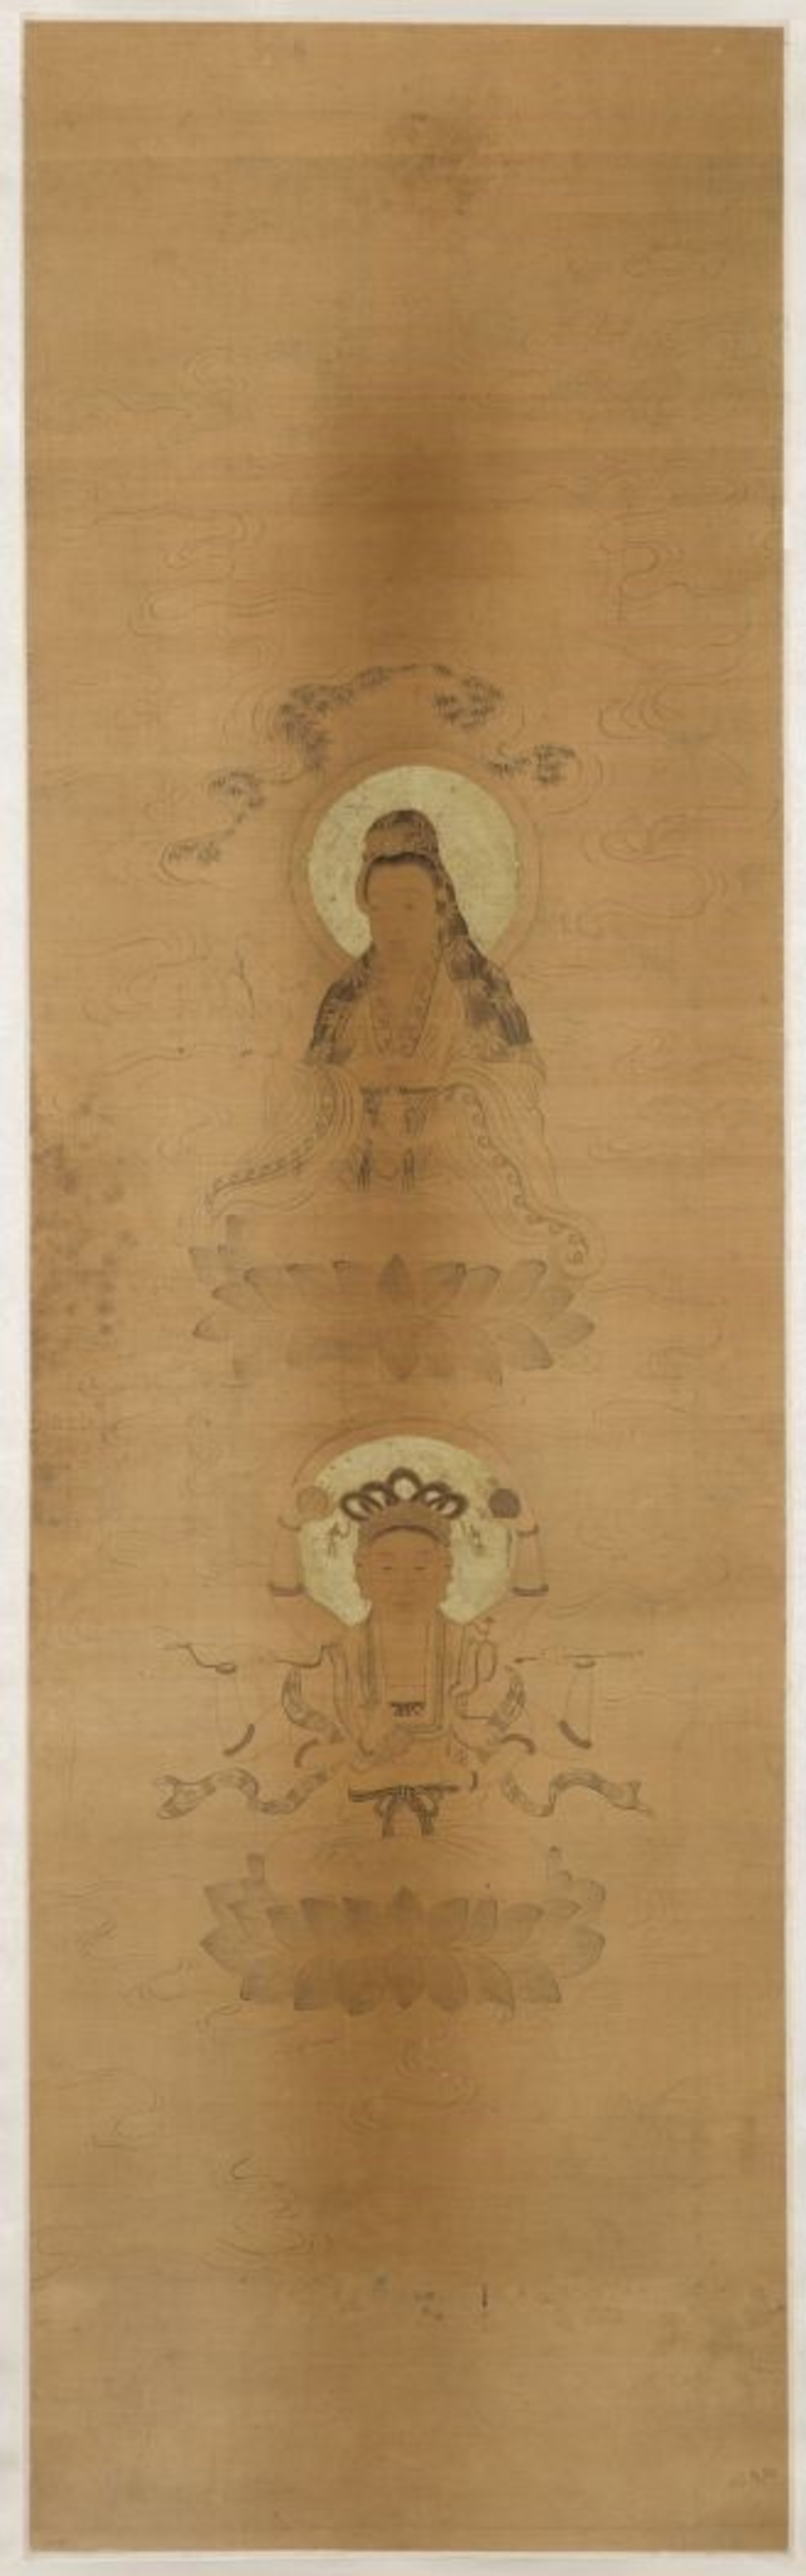 Dvě podoby bódhisattvy Kuan-jin, Čína, 18.–19. století, Národní galerie Praha.jpg